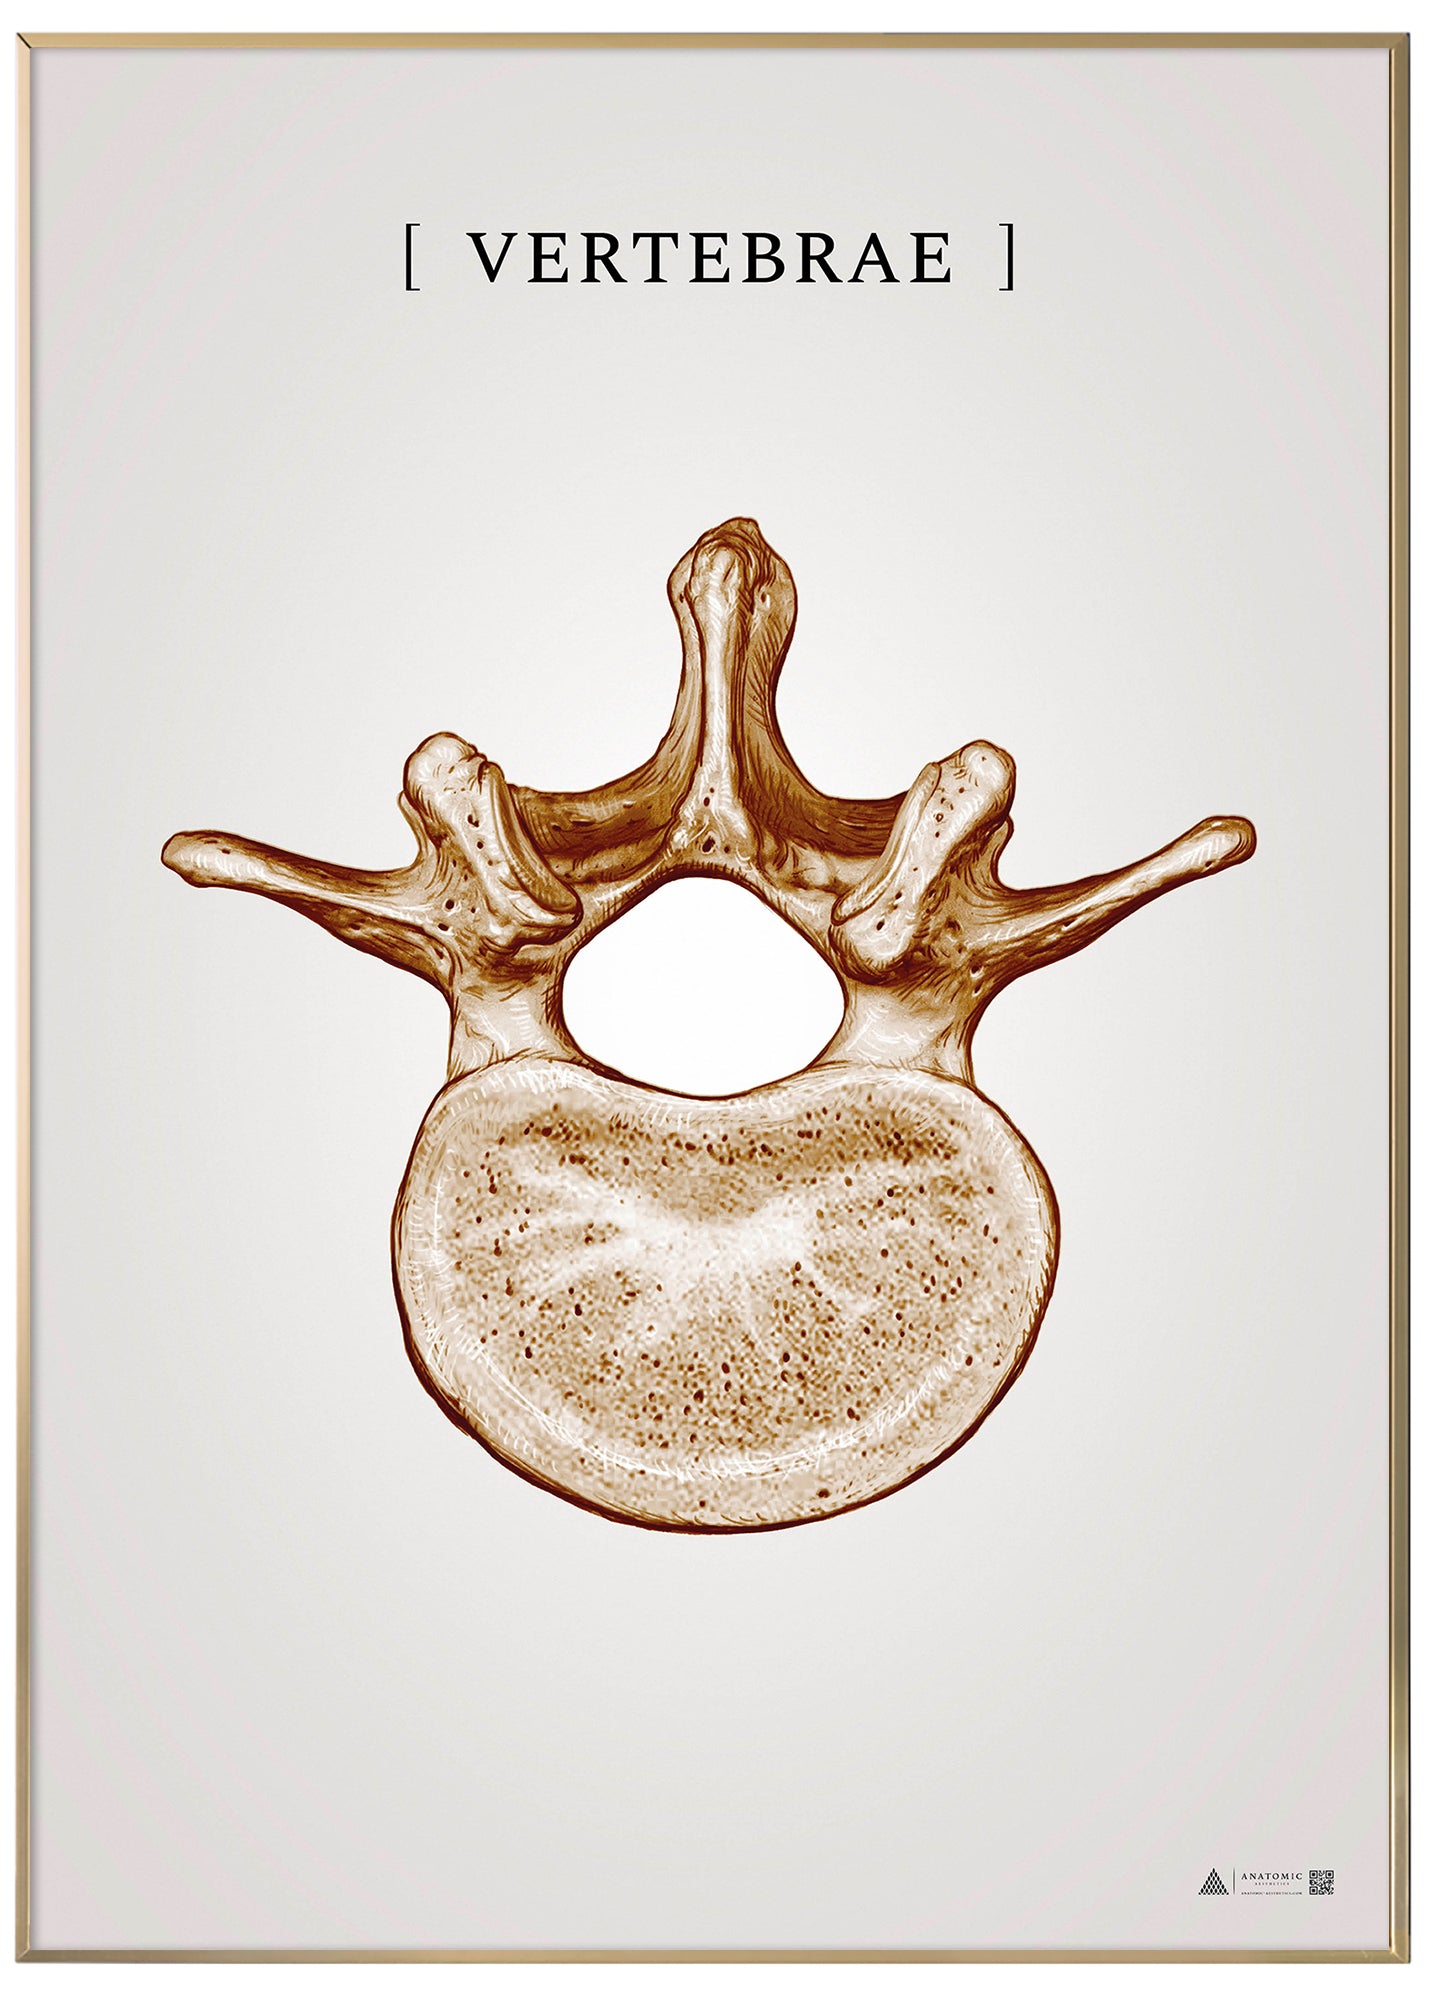 Burner vertebrae copper - anatomisk kunstplakat